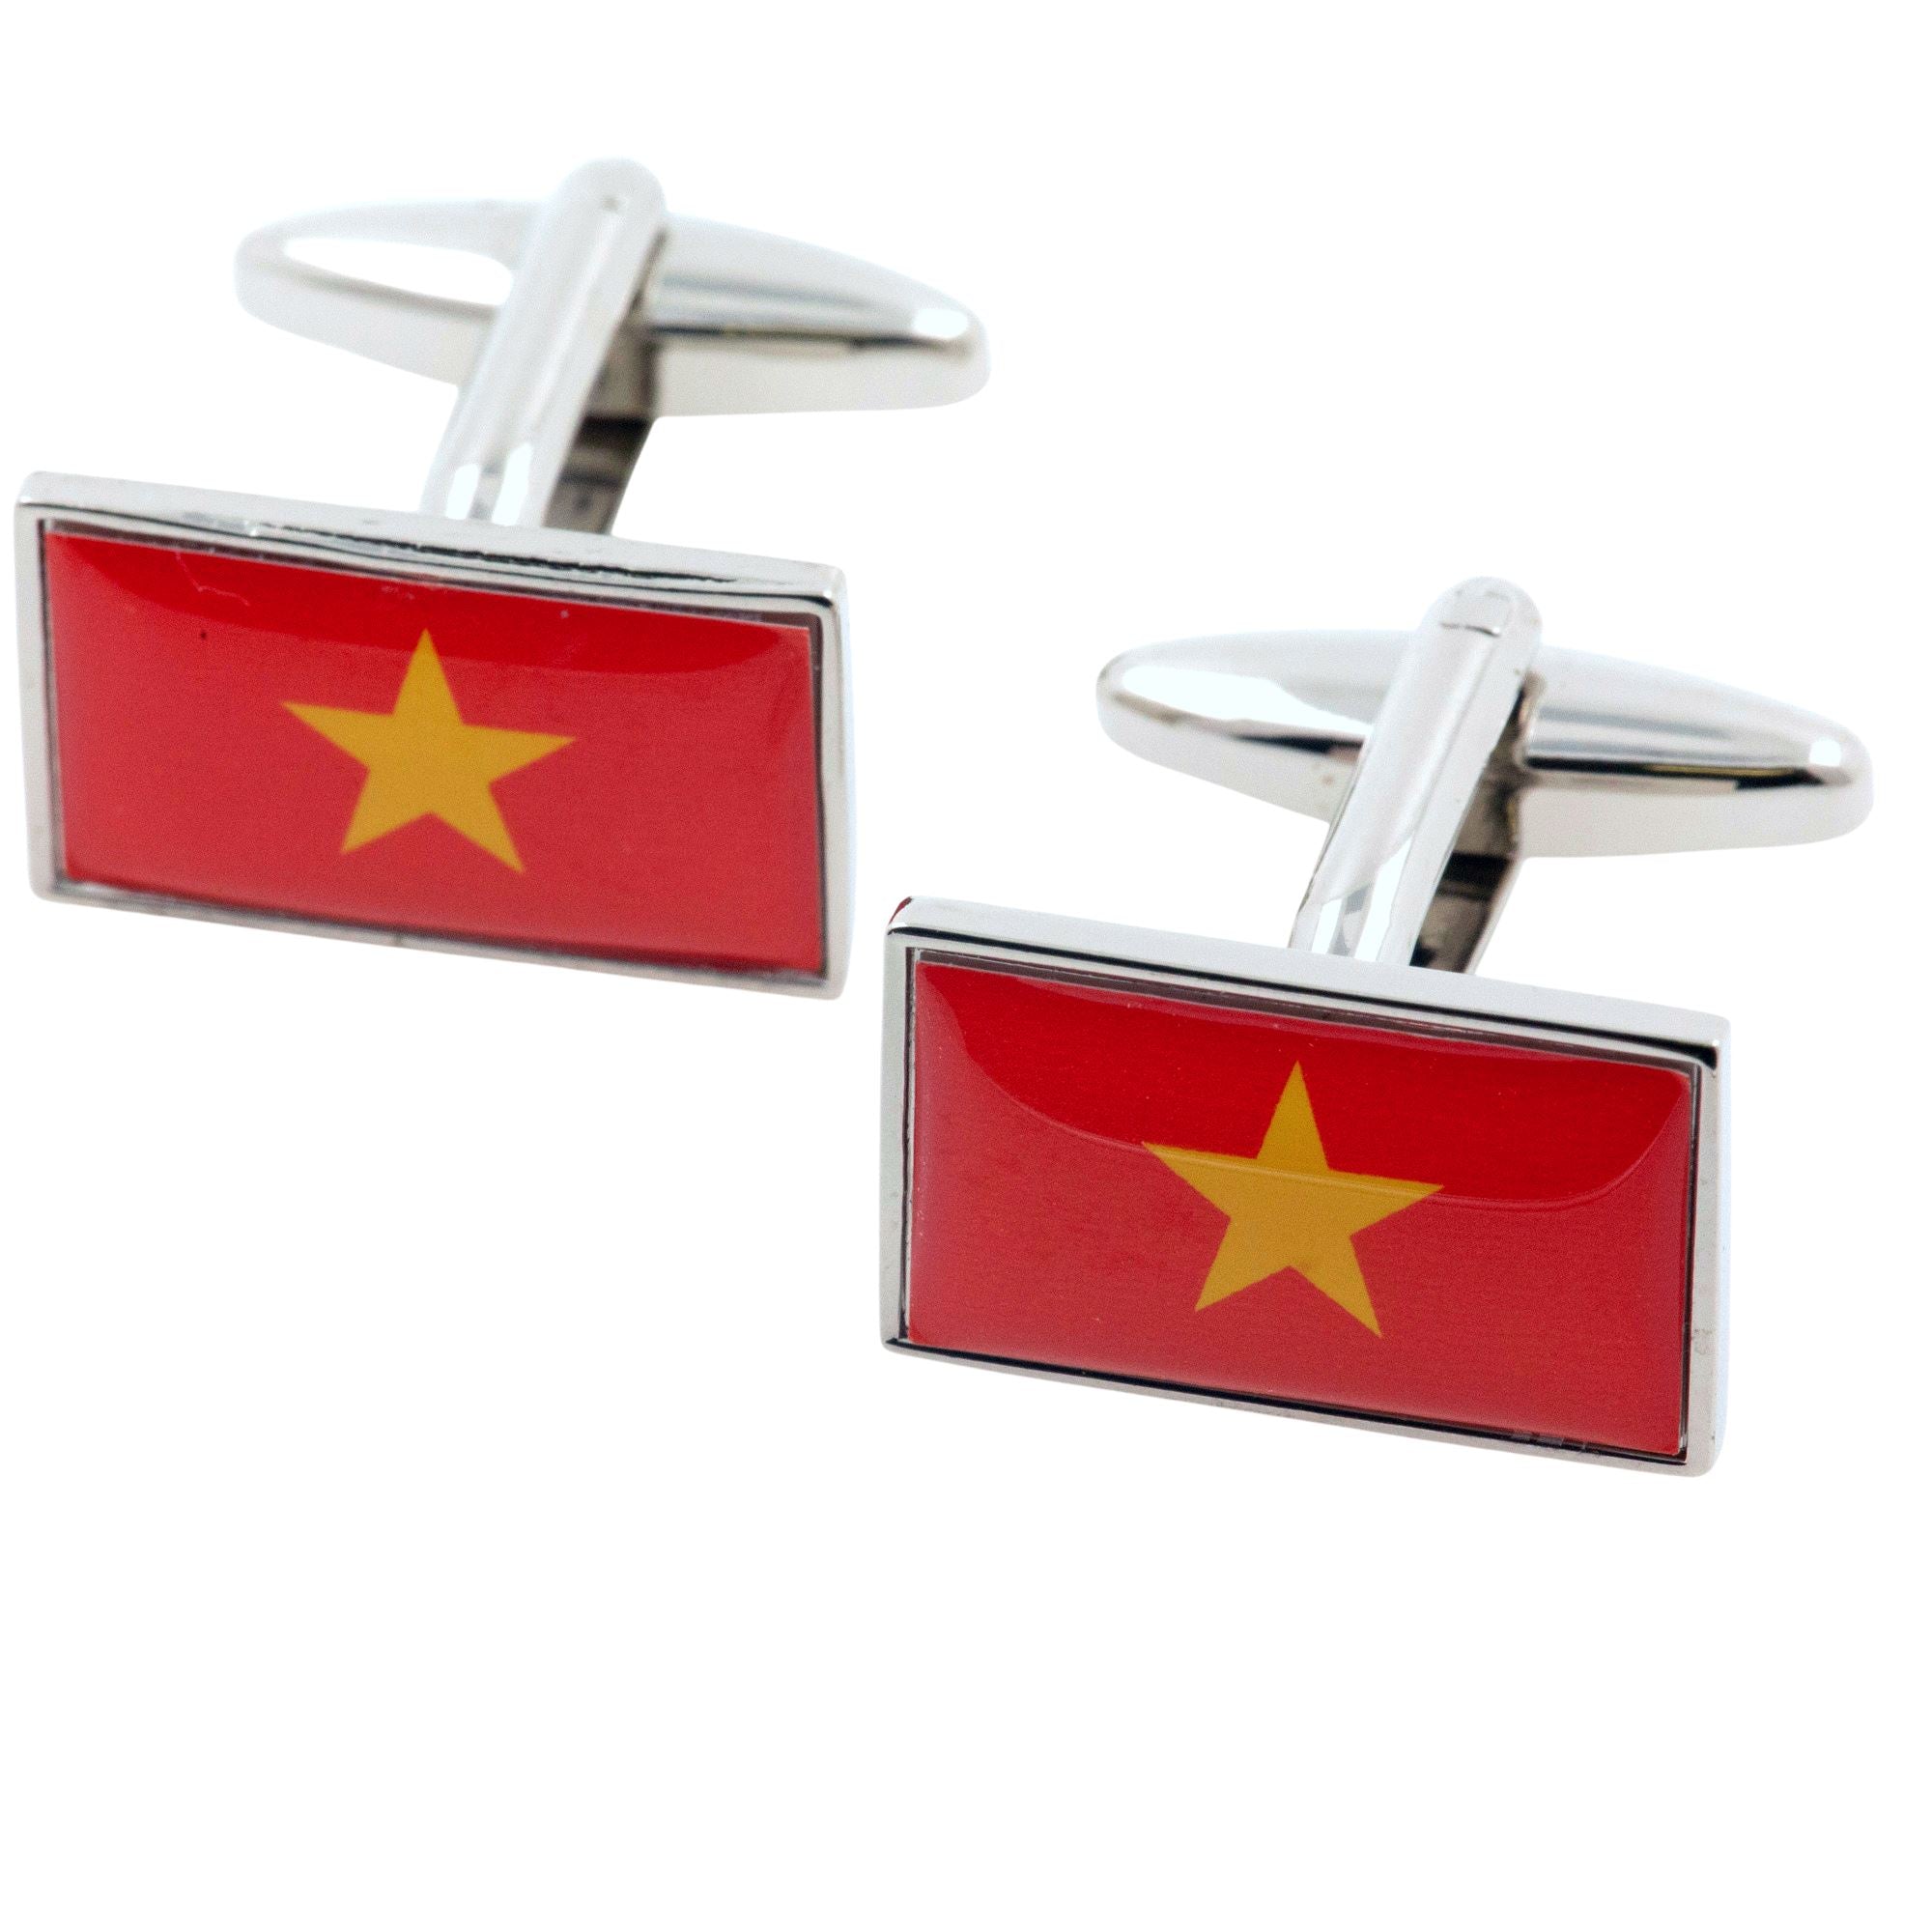 Flag of Vietnam Cufflinks Novelty Cufflinks Clinks 